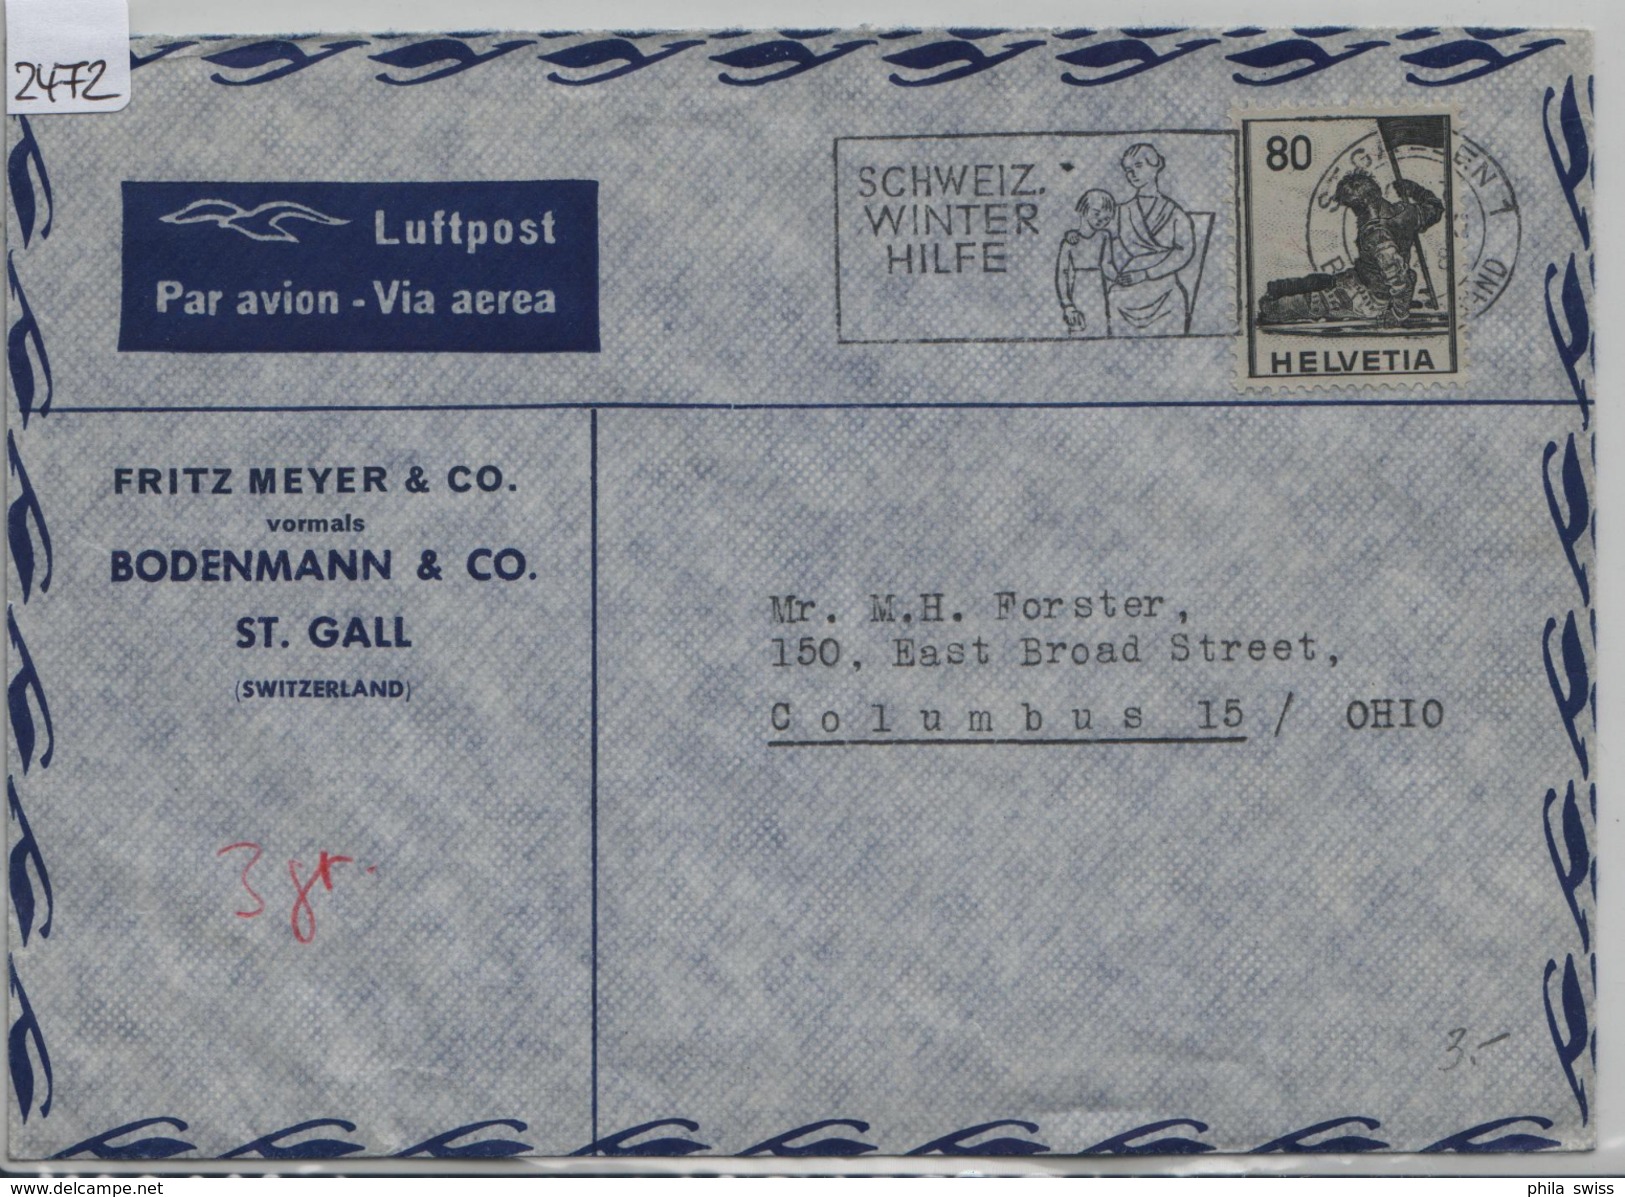 Luftpost Par Avion 246/380 - Stempel: St. Gallen Schweiz. Winterhilfe Nach Columbus (Fritz Meyer & Co.) - Briefe U. Dokumente